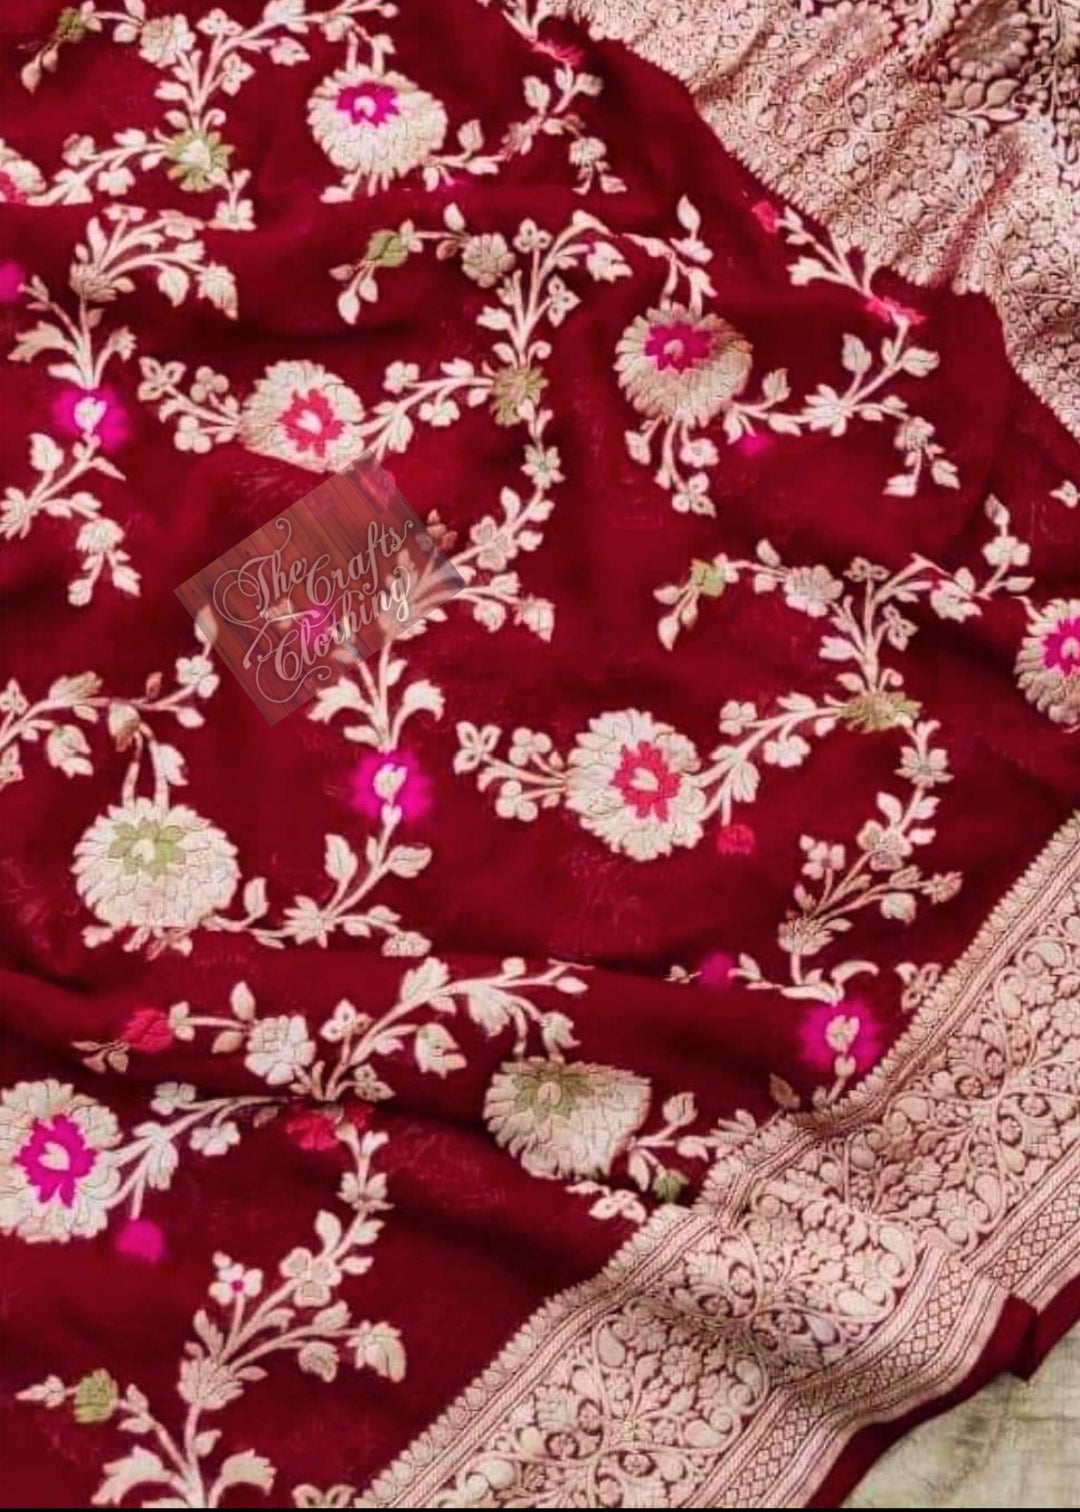 Khaddi Georgette Handloom Banarasi Saree - Jaal with Meenakari - The Crafts Clothing